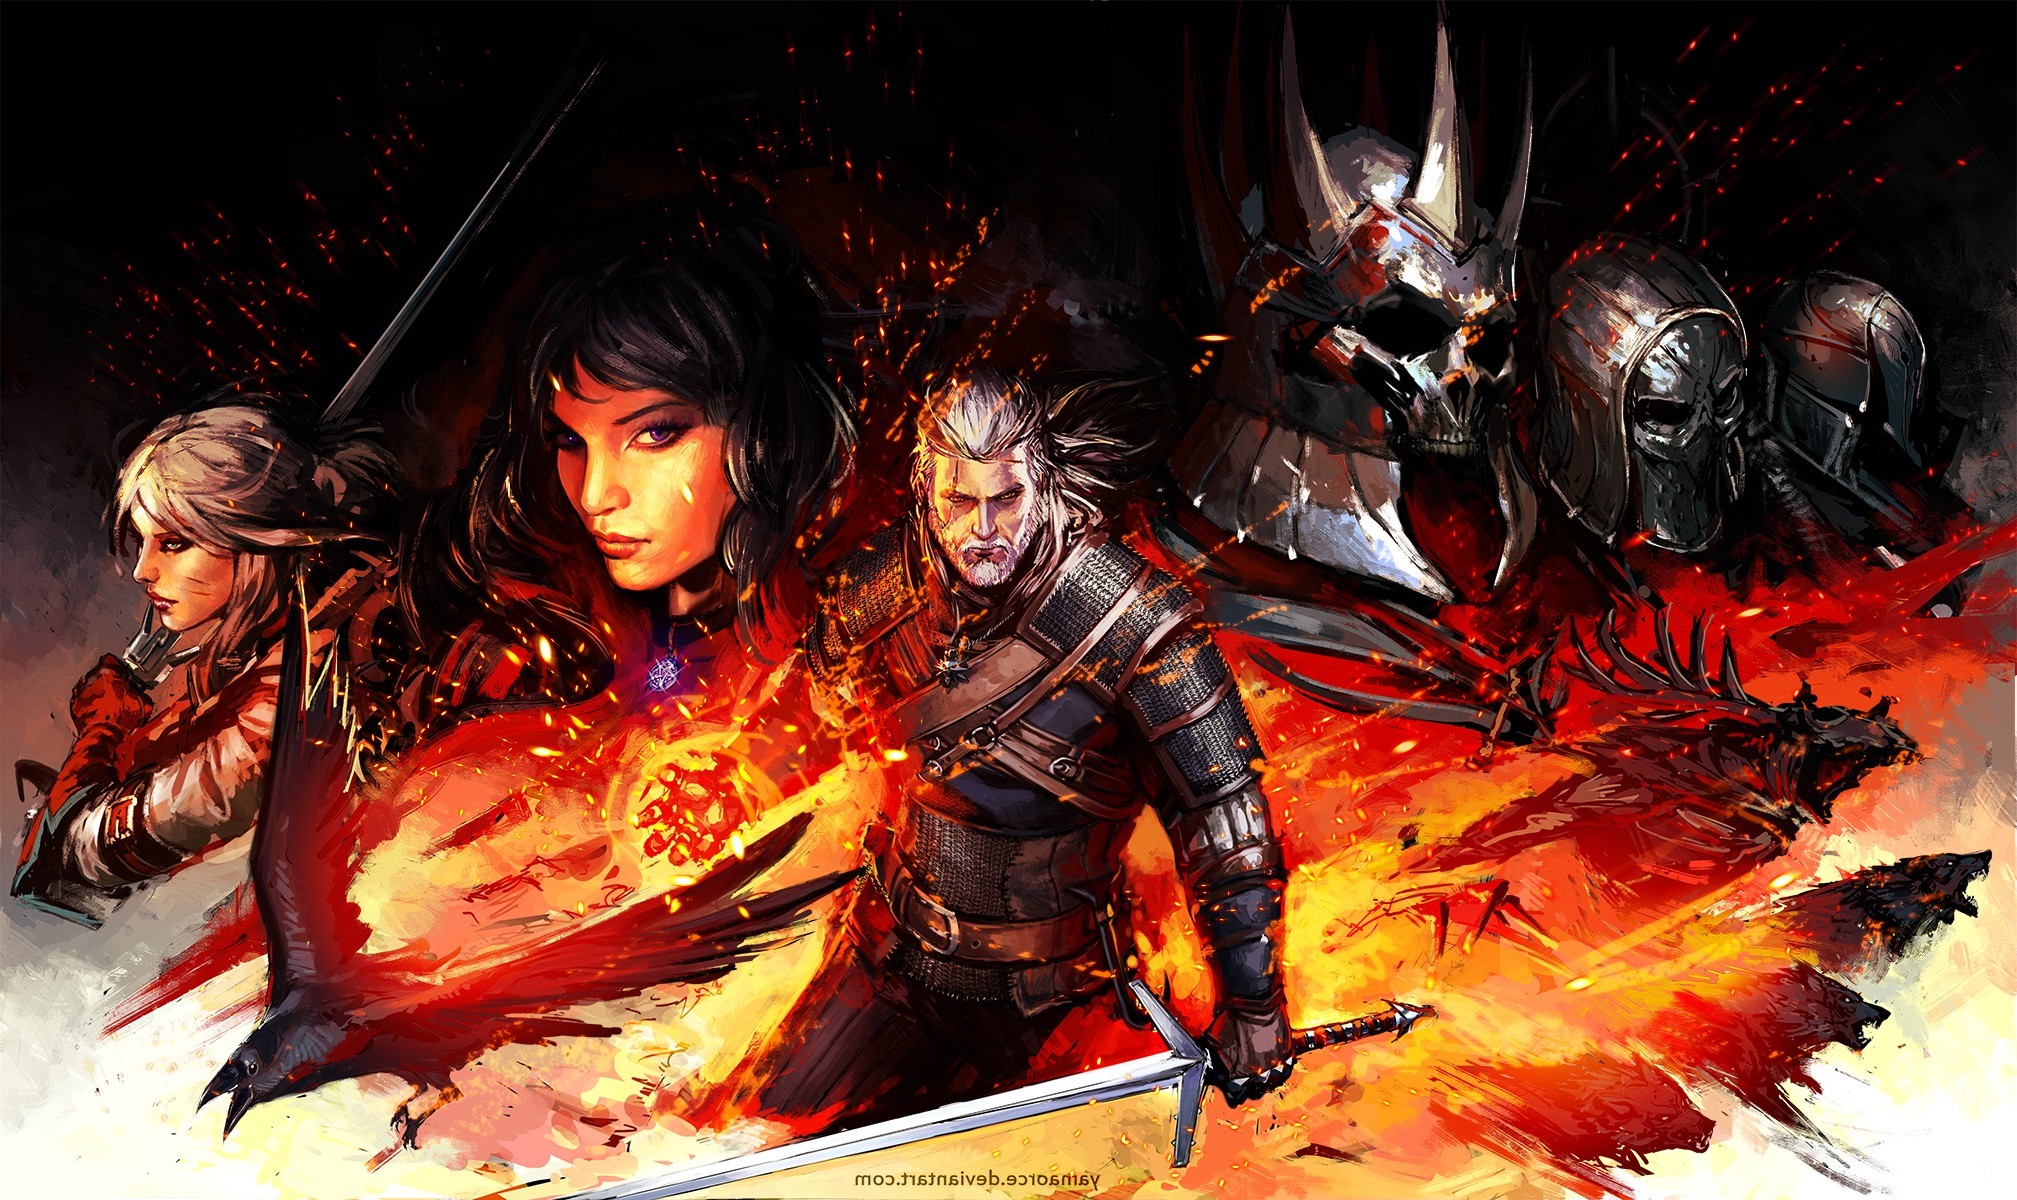 Geralt Of Rivia, The Witcher 3: Wild Hunt, Yennefer Of Vengerberg, Cirilla Fiona Elen Riannon Wallpaper